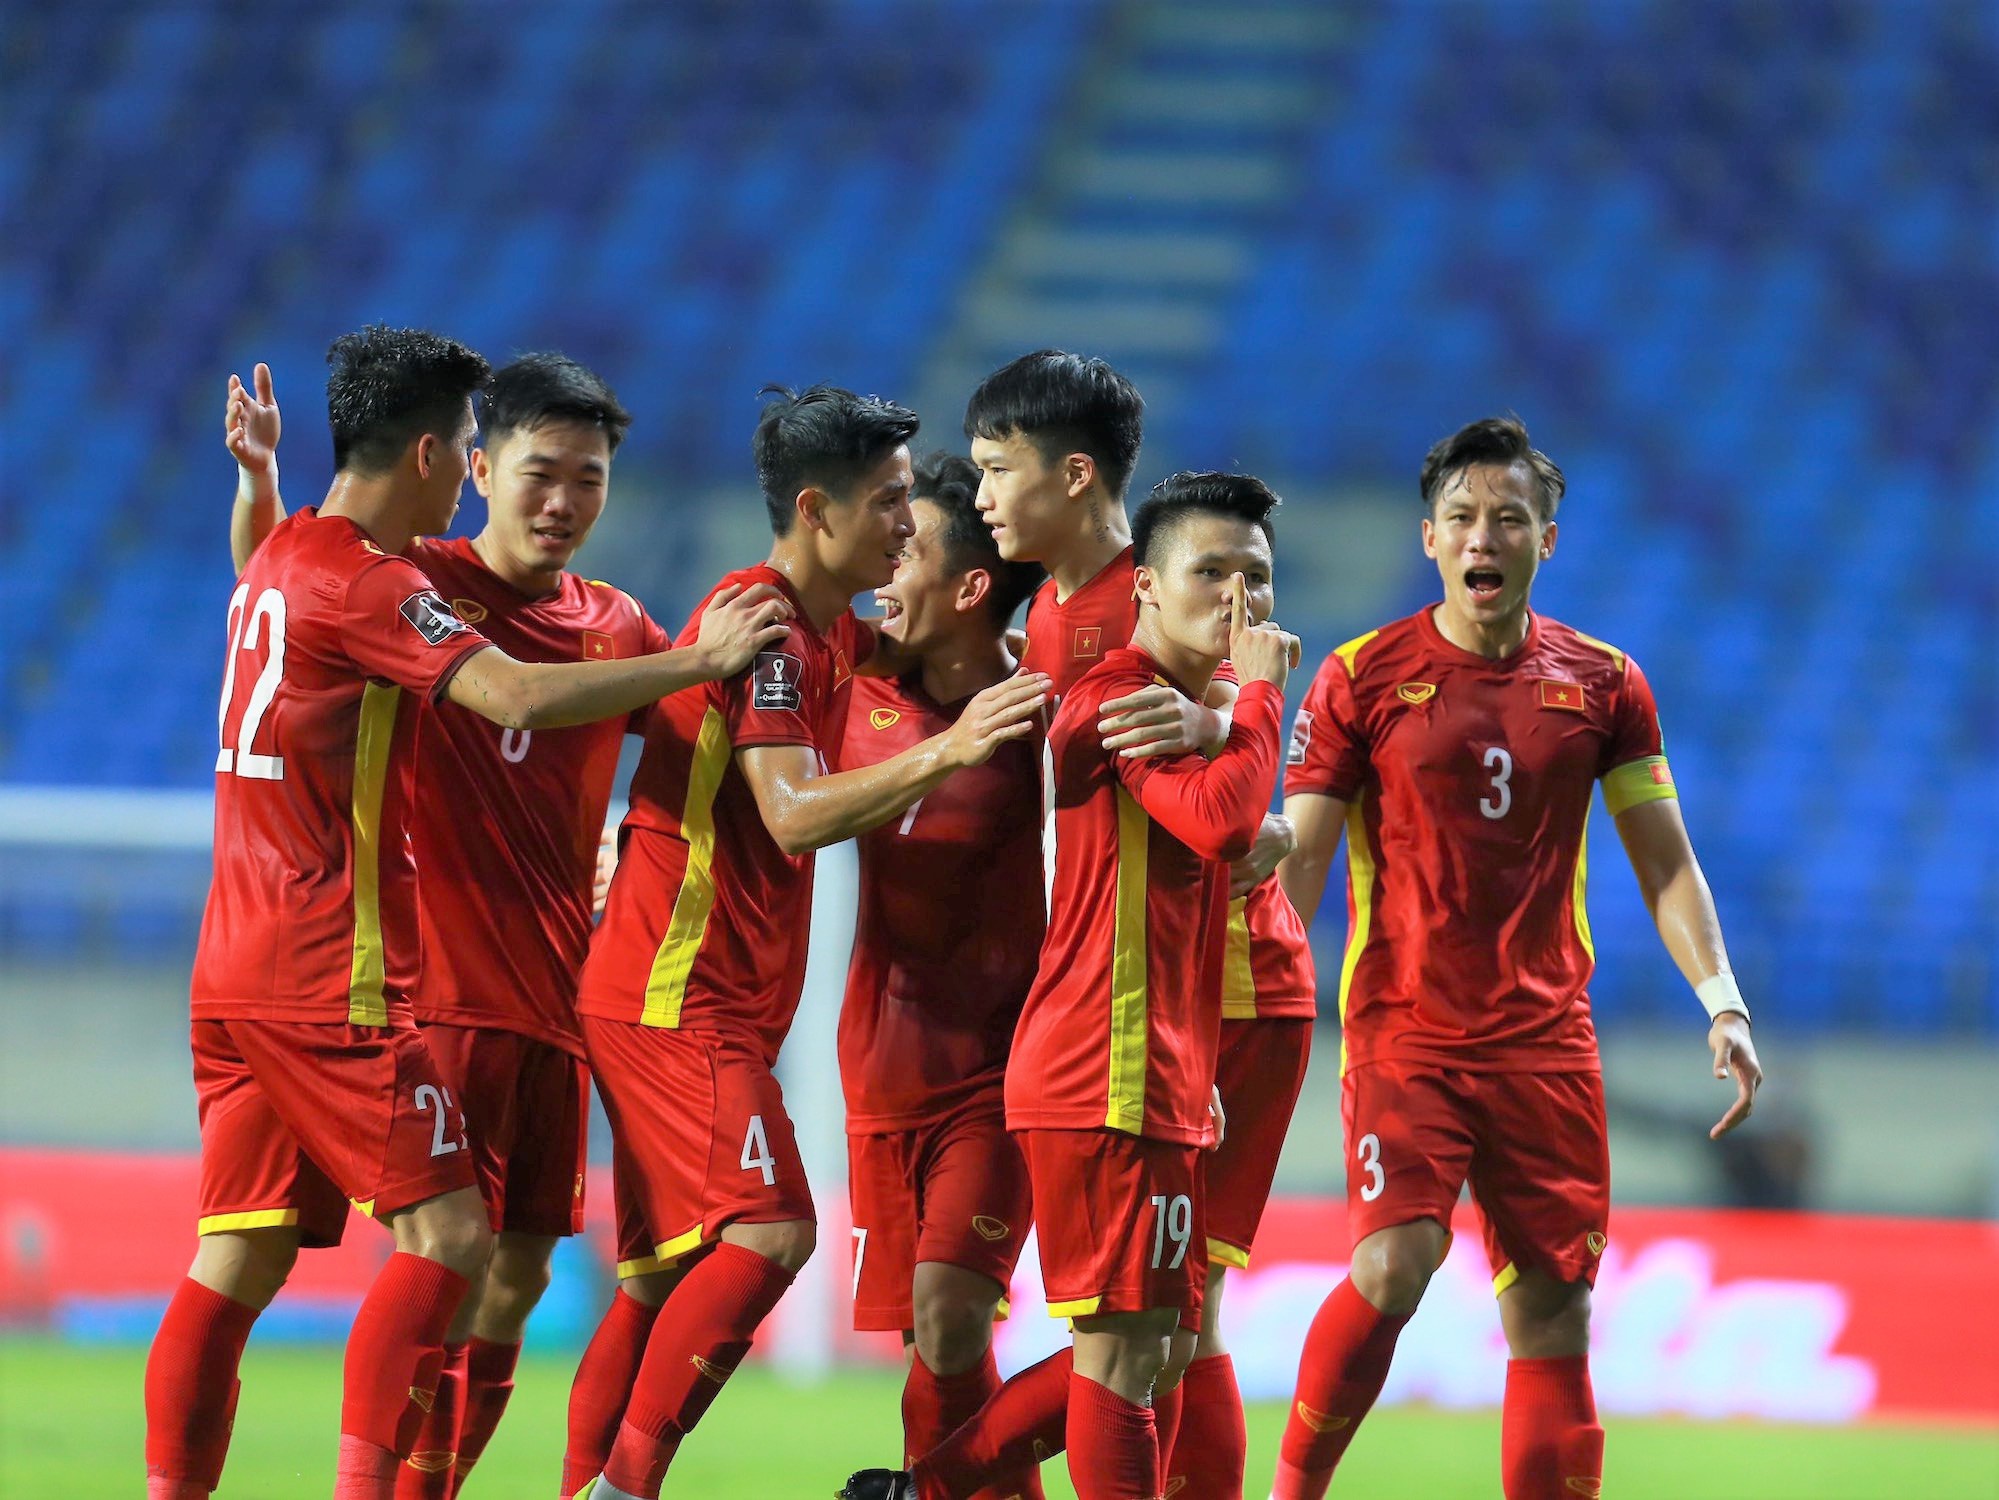 Thủ tướng đã khen ngợi đội tuyển bóng đá nam quốc gia Việt Nam về tinh thần chiến đấu và thành tích vượt trội. Để cảm nhận niềm hạnh phúc và sự tự hào của đội tuyển và mọi người dân, hãy xem hình ảnh này.